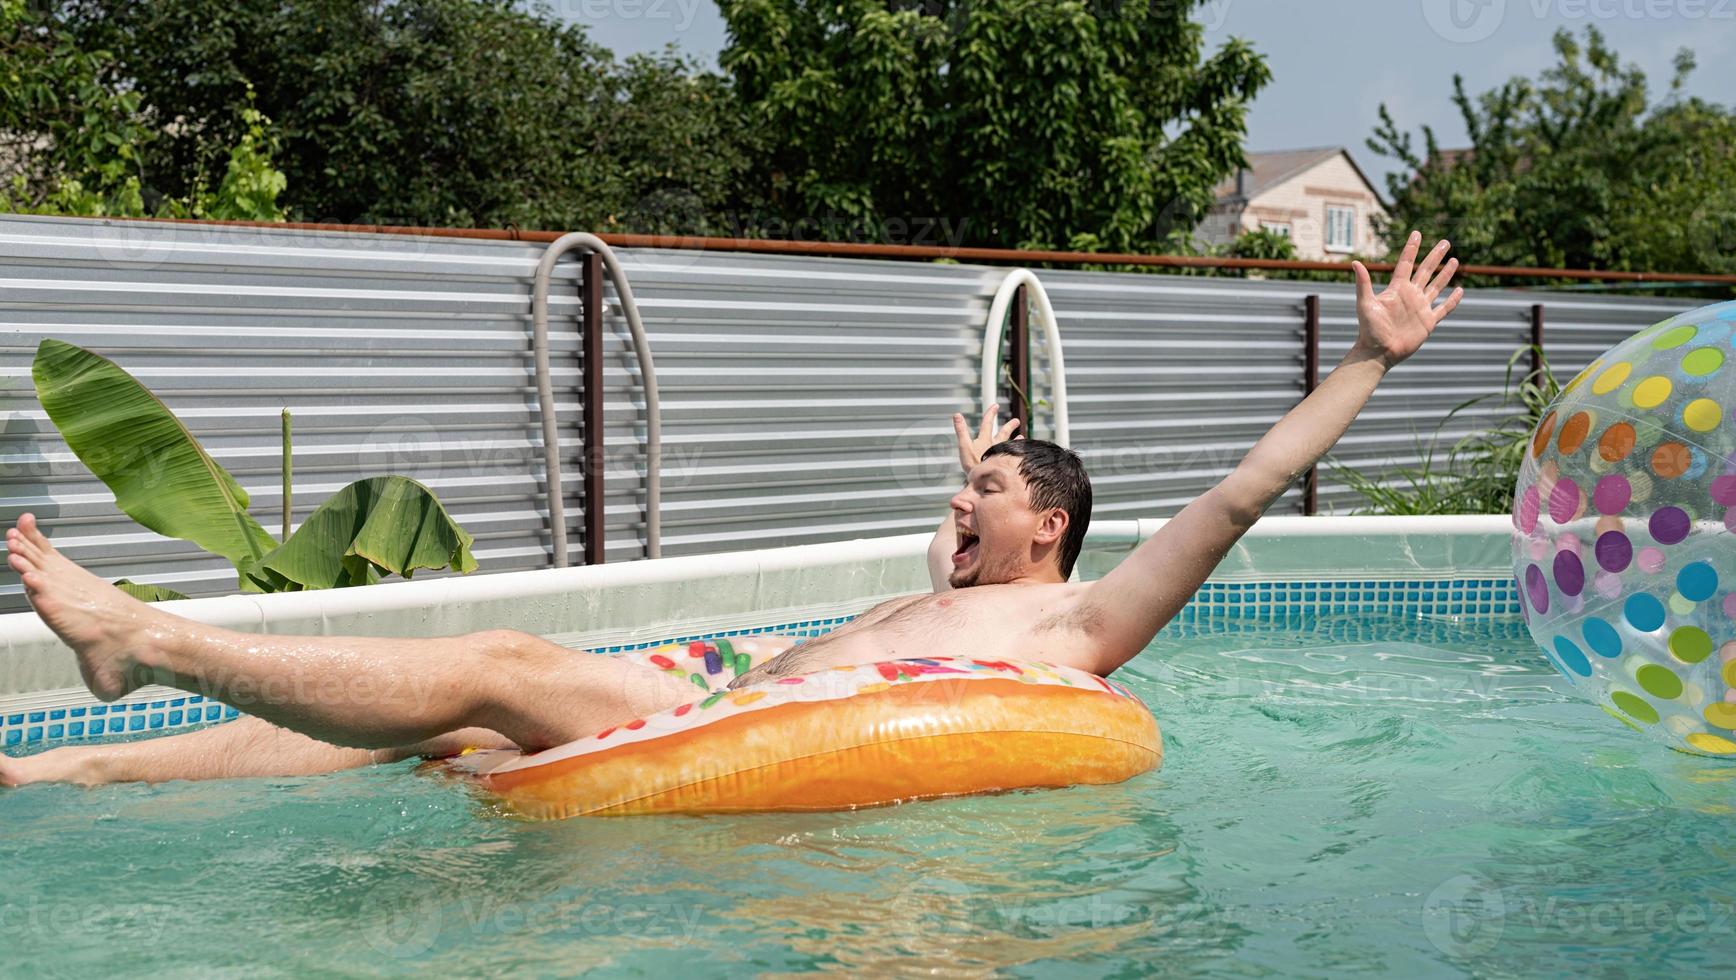 jovem se divertindo na piscina em uma banheira inflável foto